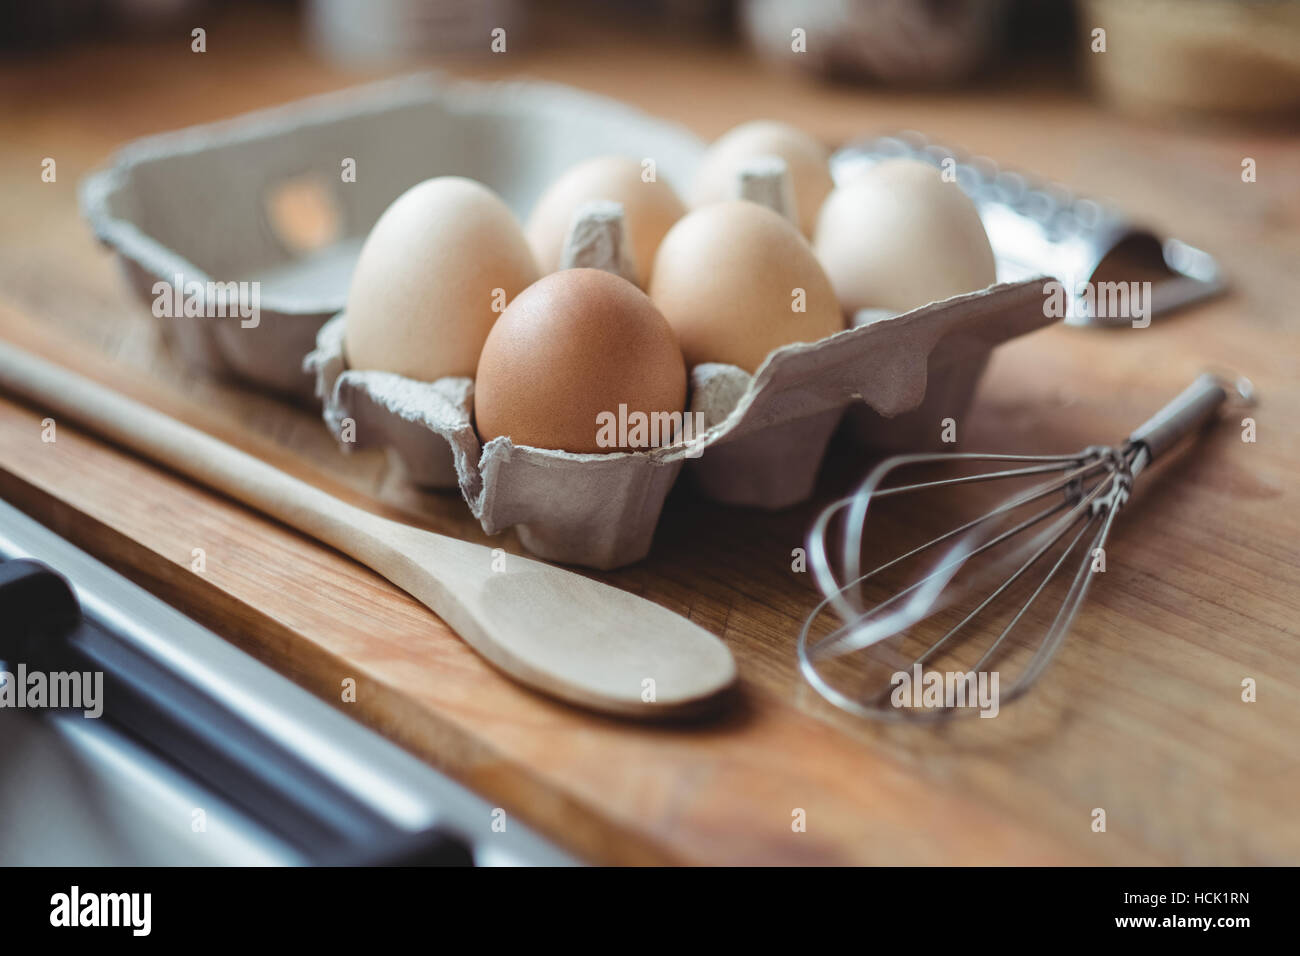 Los huevos, bigote y una cuchara de madera en la mesa Foto de stock